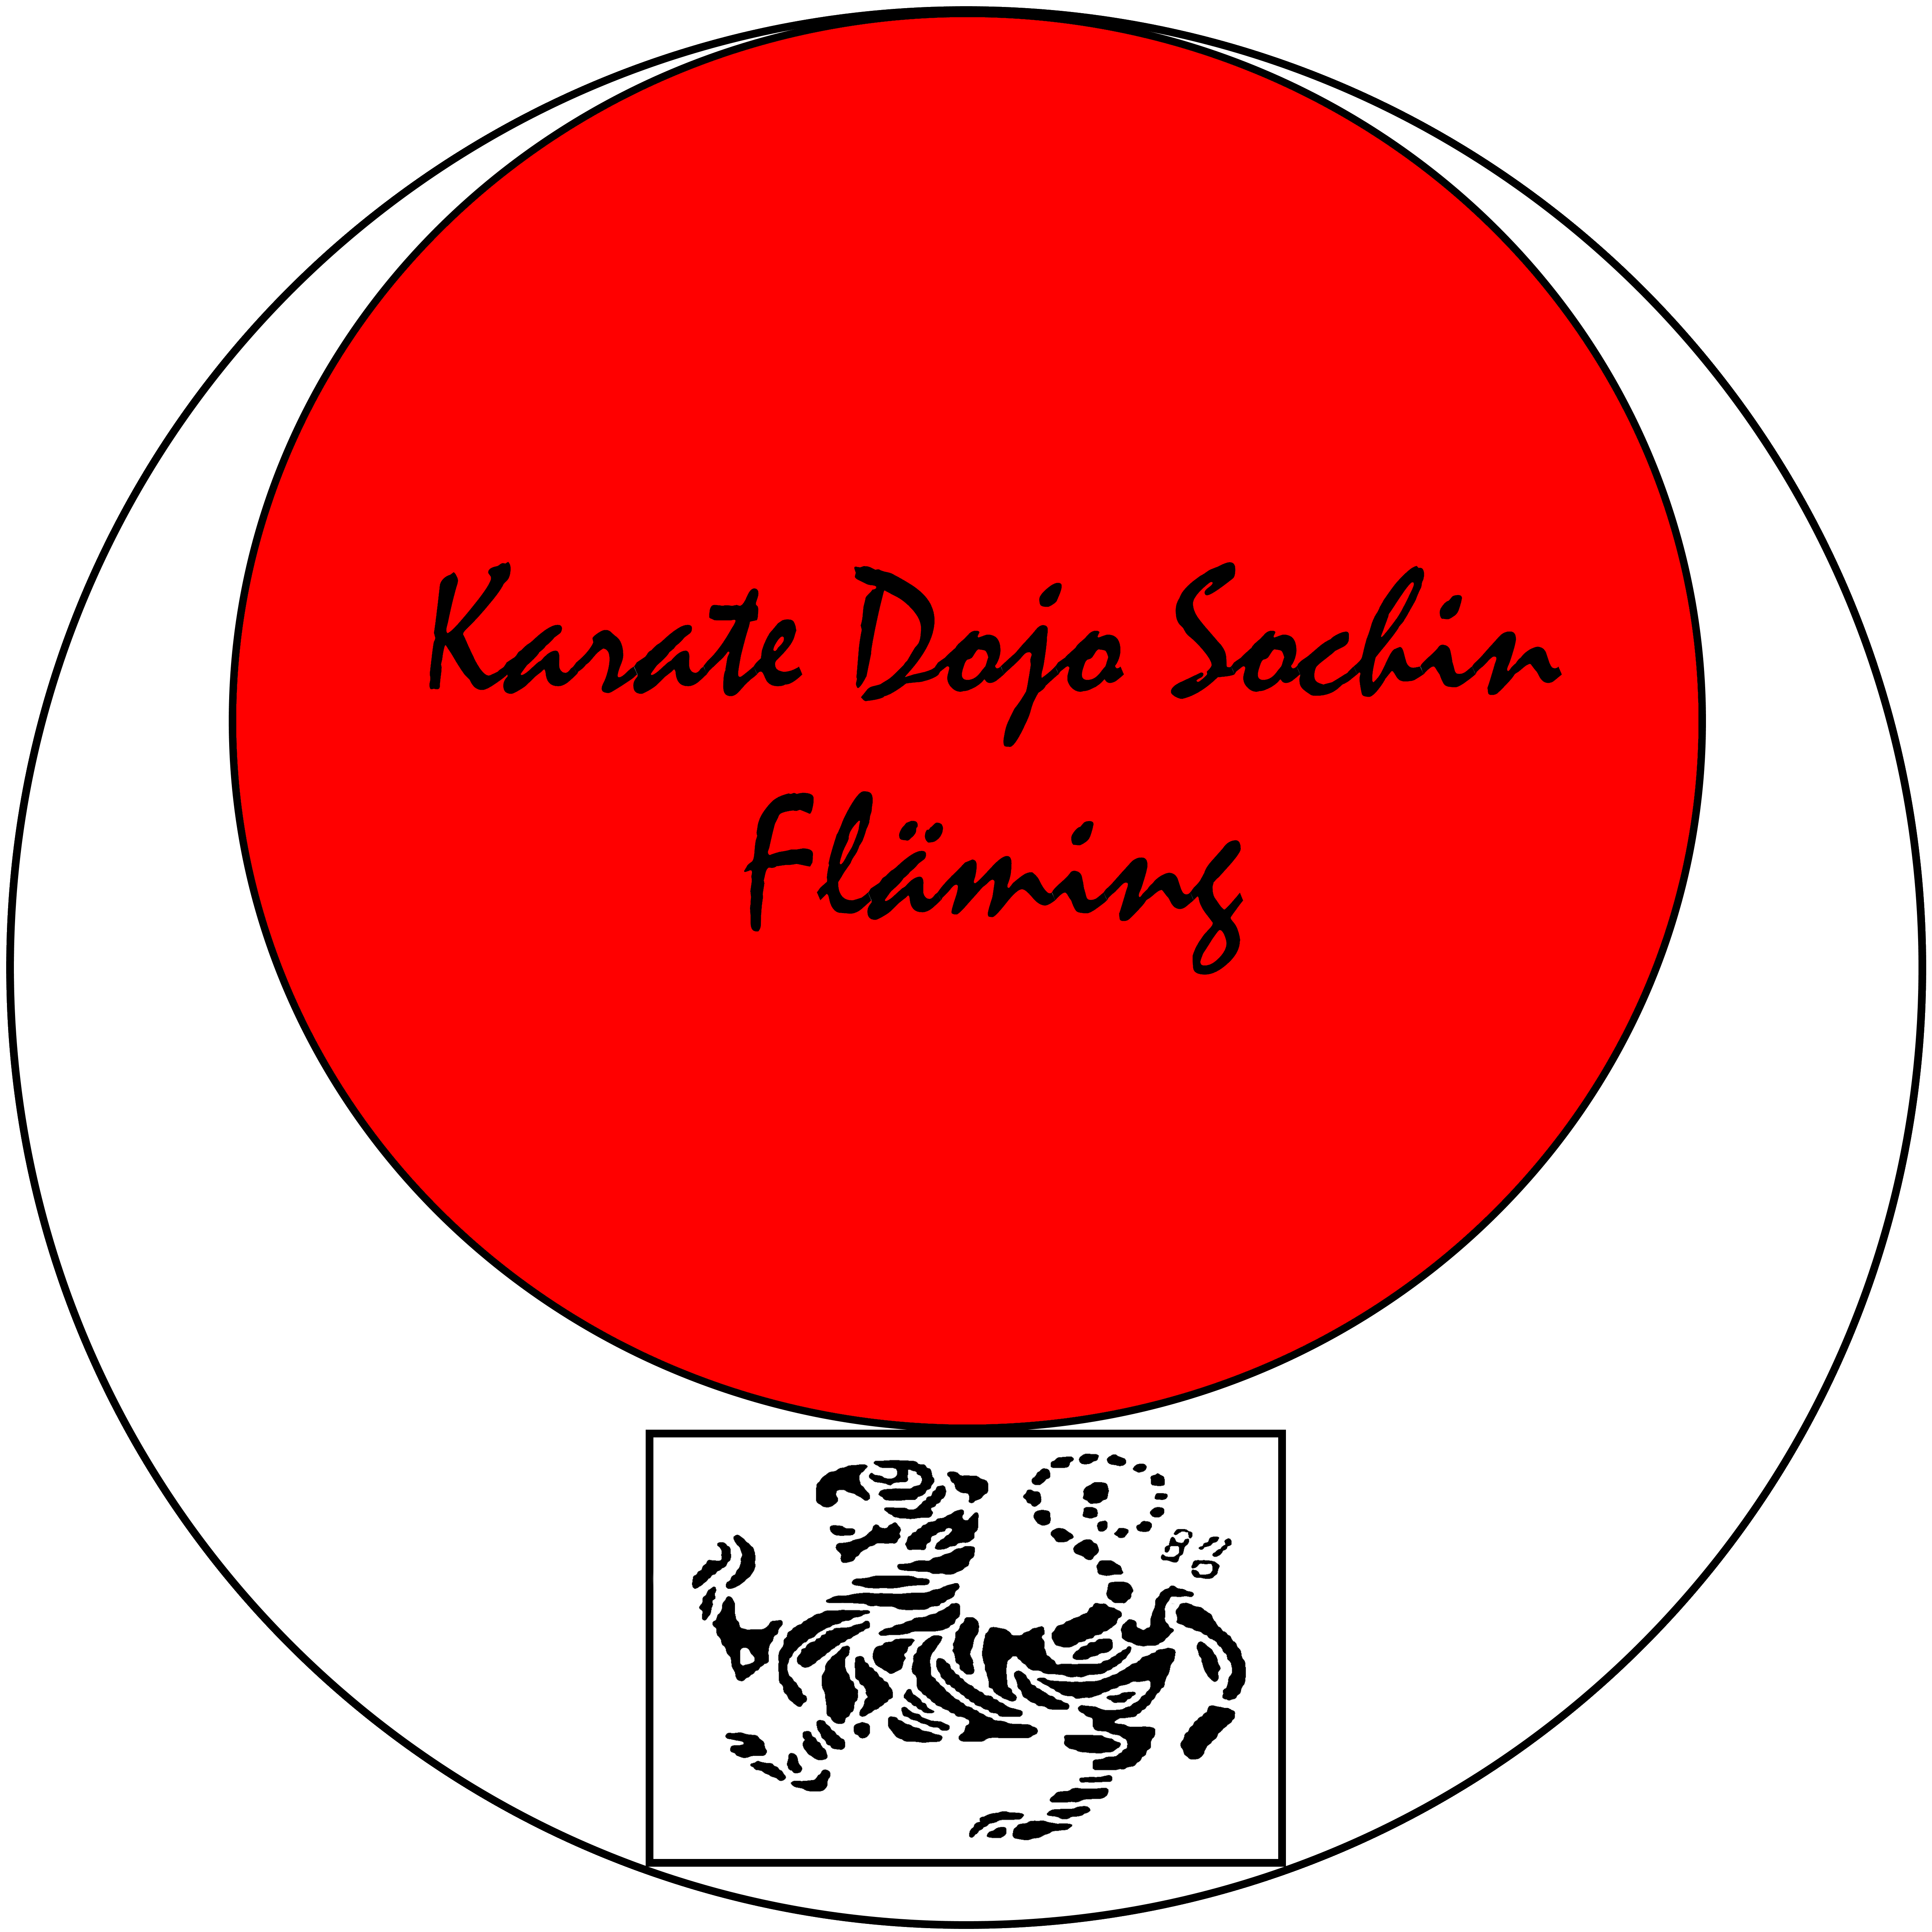 Karate Dojo Sochin Fläming